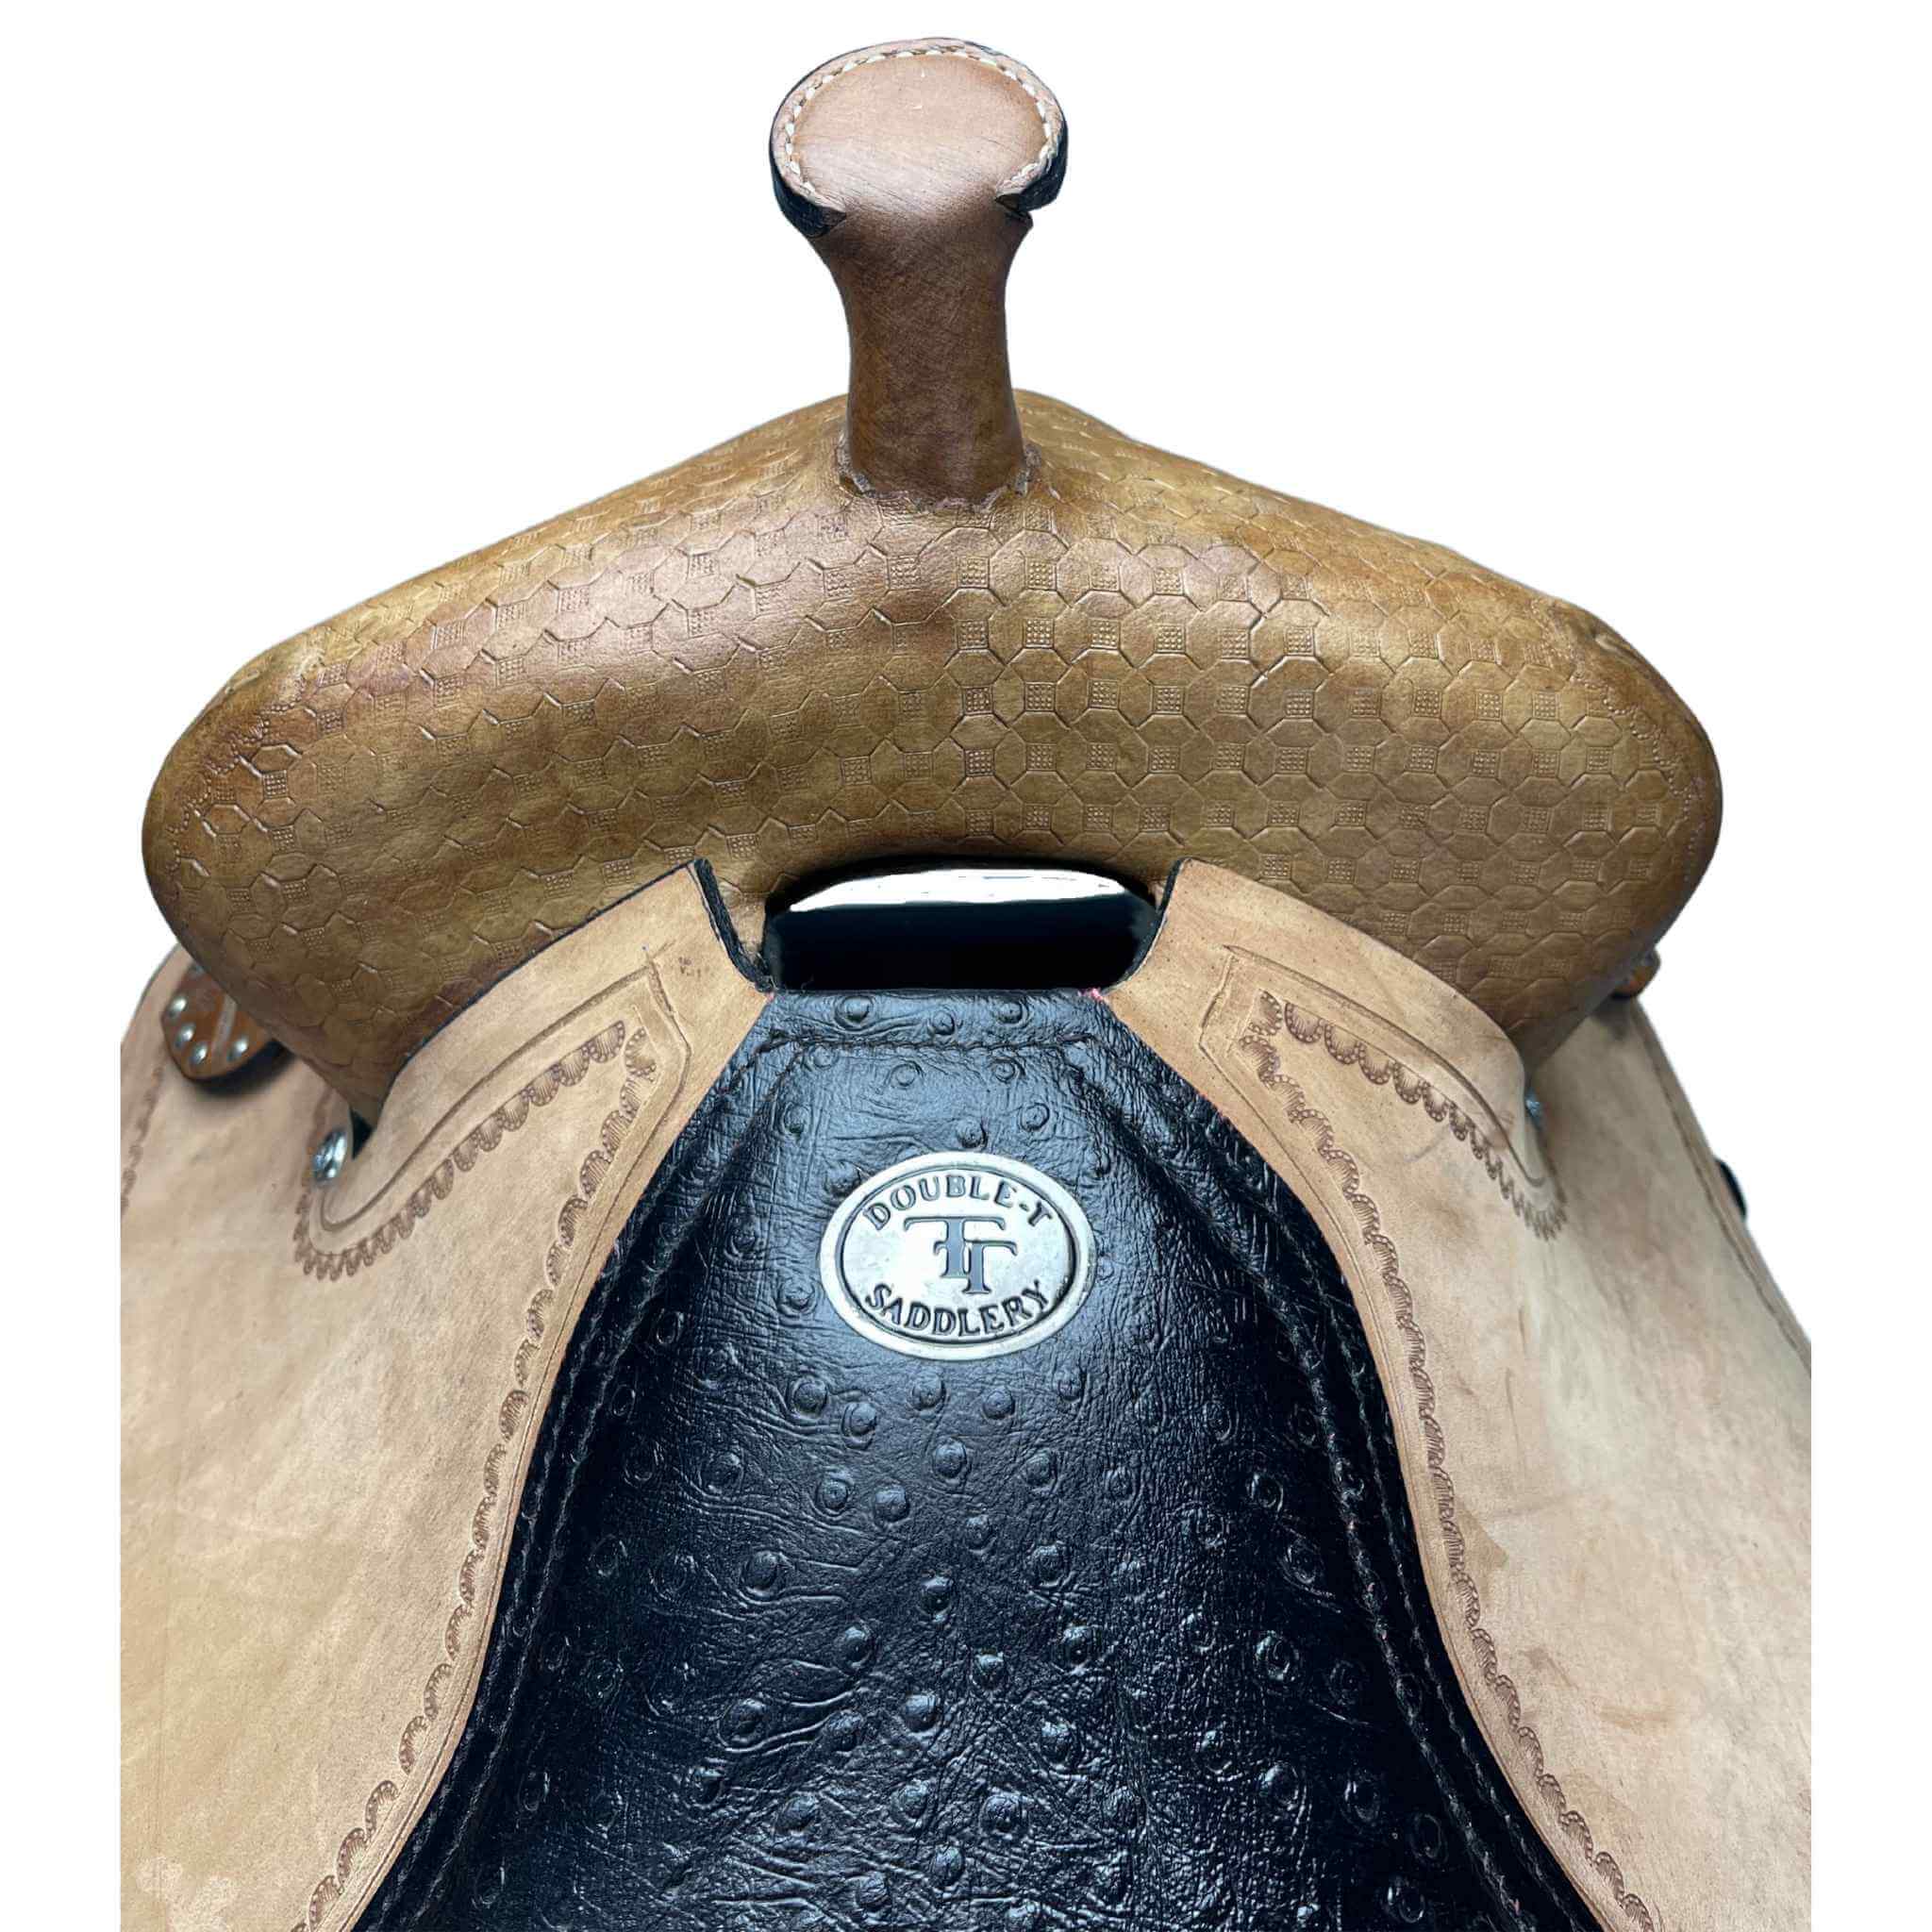 14", 15", 16" Double T  barrel style saddle set with black alligator print seat Barrel Saddle Double T   